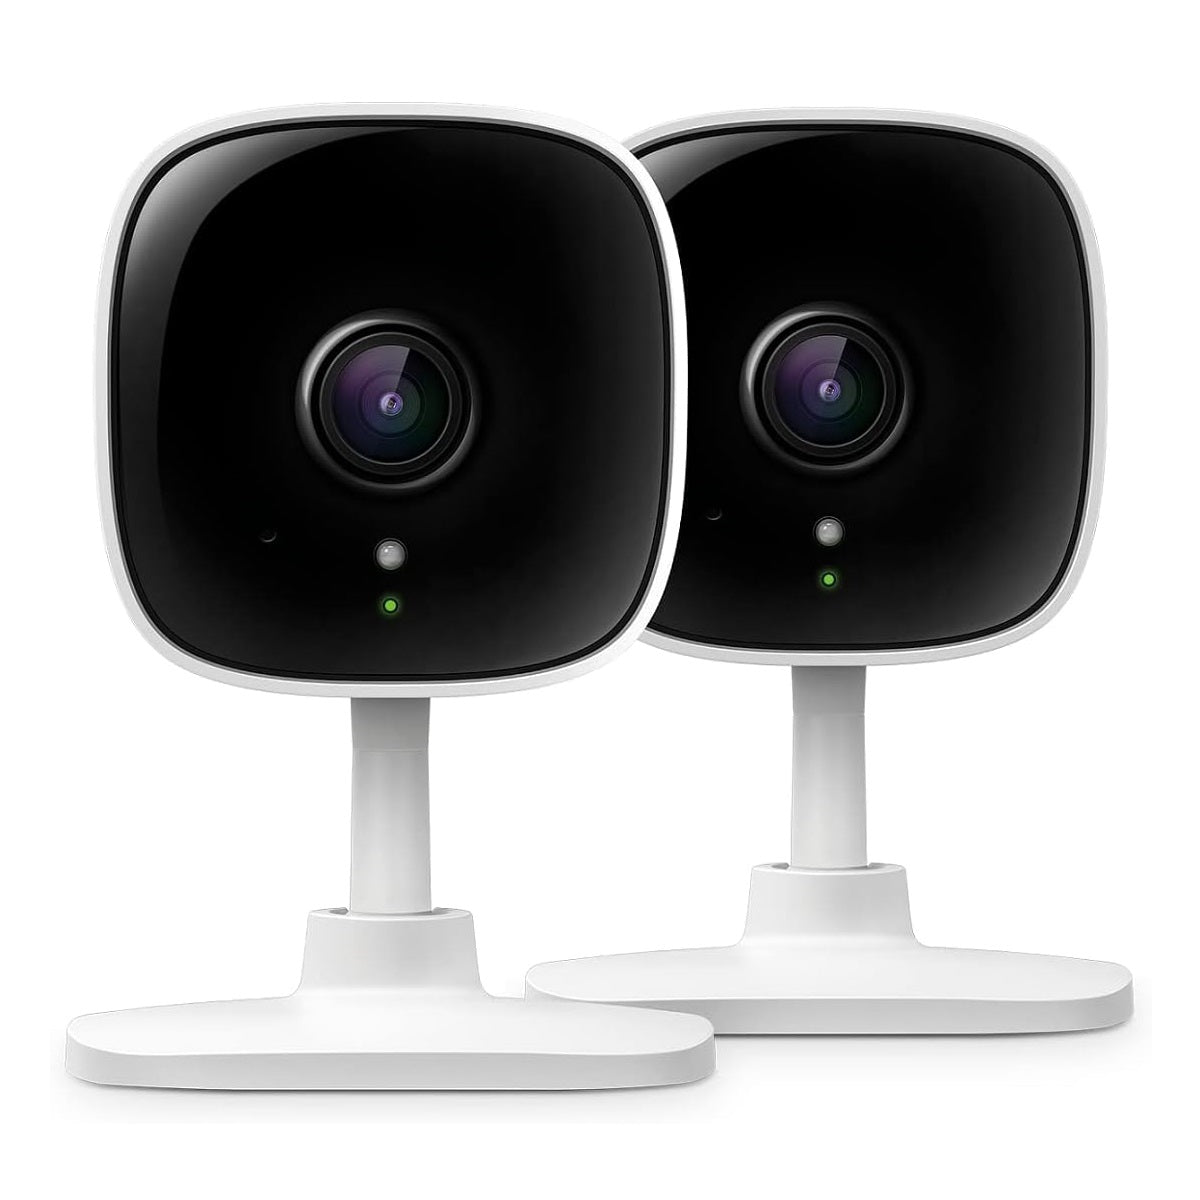 Caméra de surveillance intérieure Wi-Fi HD 1080p Tapo de TP-Link